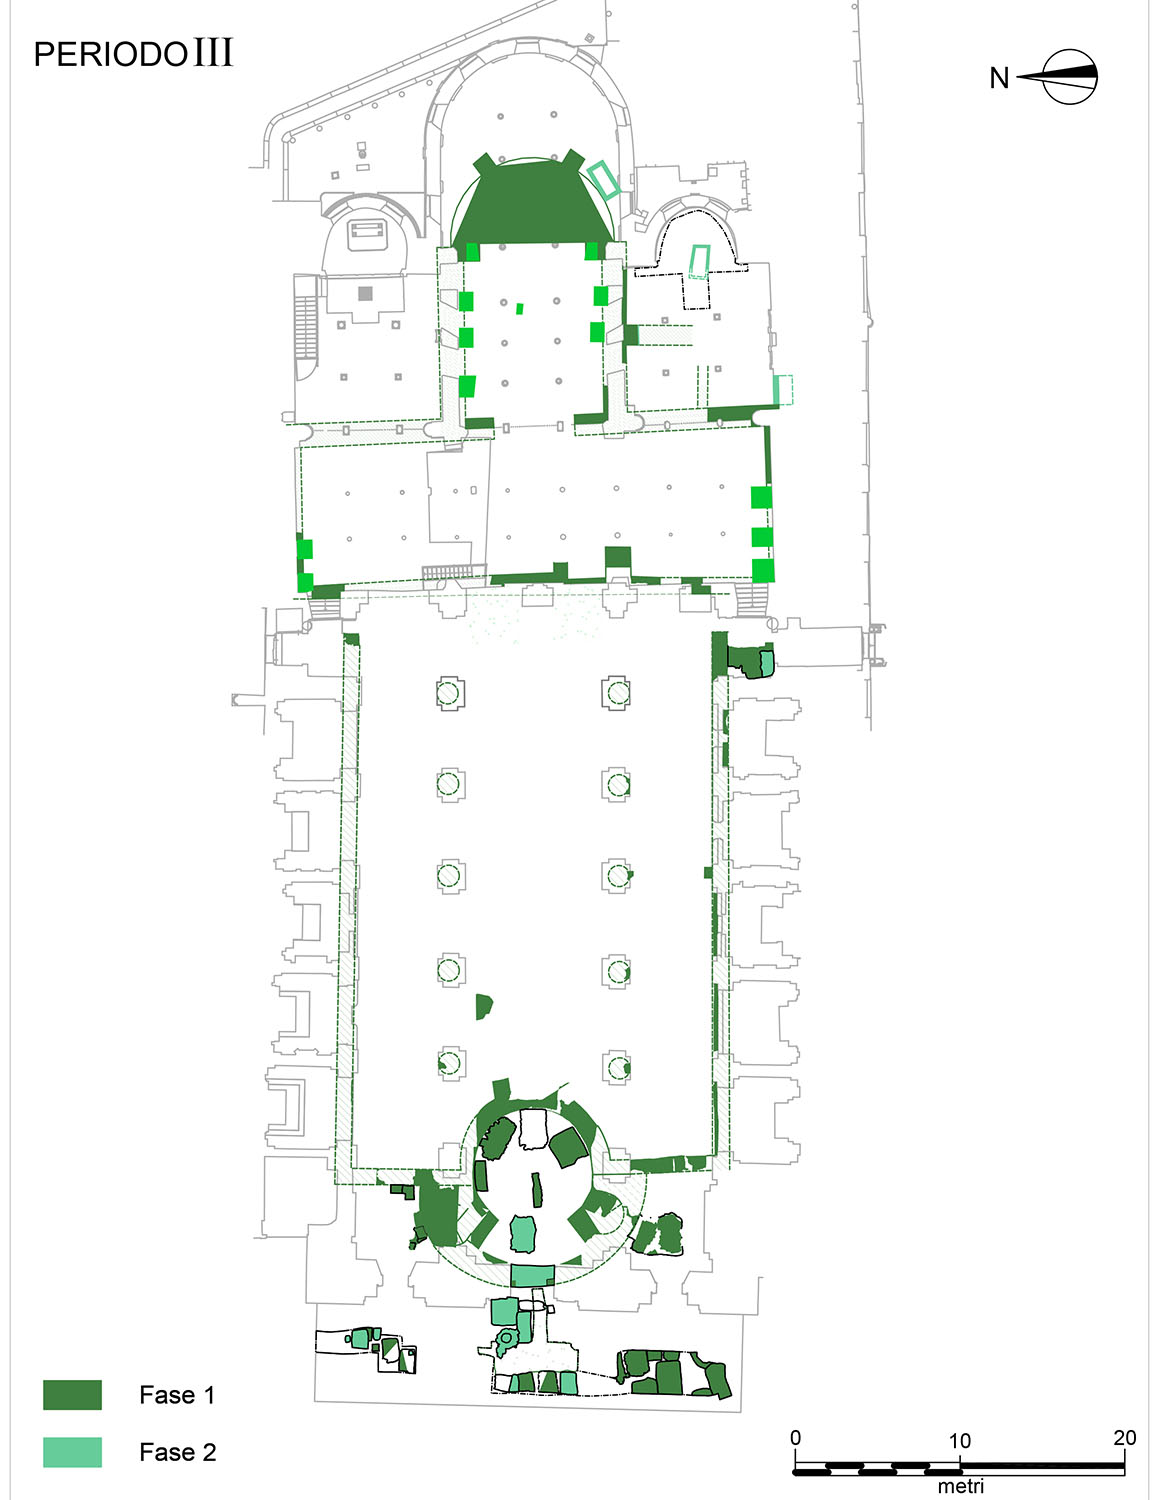 Fig. 4. Planimetria della cattedrale di Reggio Emilia, III periodo (XI/XII secolo) [da Haec Domus surgit tibi dedicata 2014].